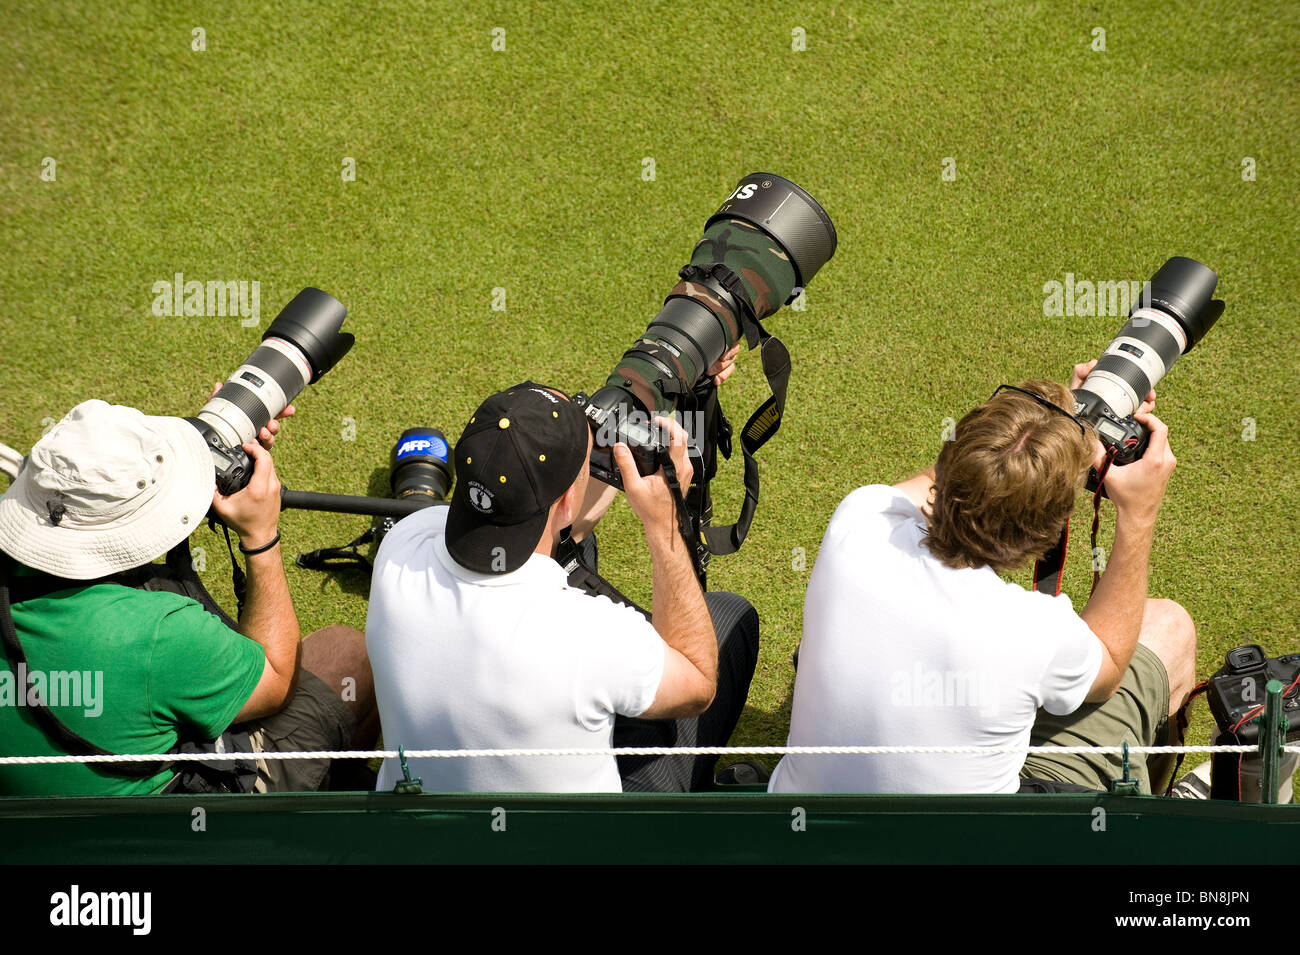 Tirez sur les photographes au cours de l'action 2010 des Championnats de tennis de Wimbledon Banque D'Images